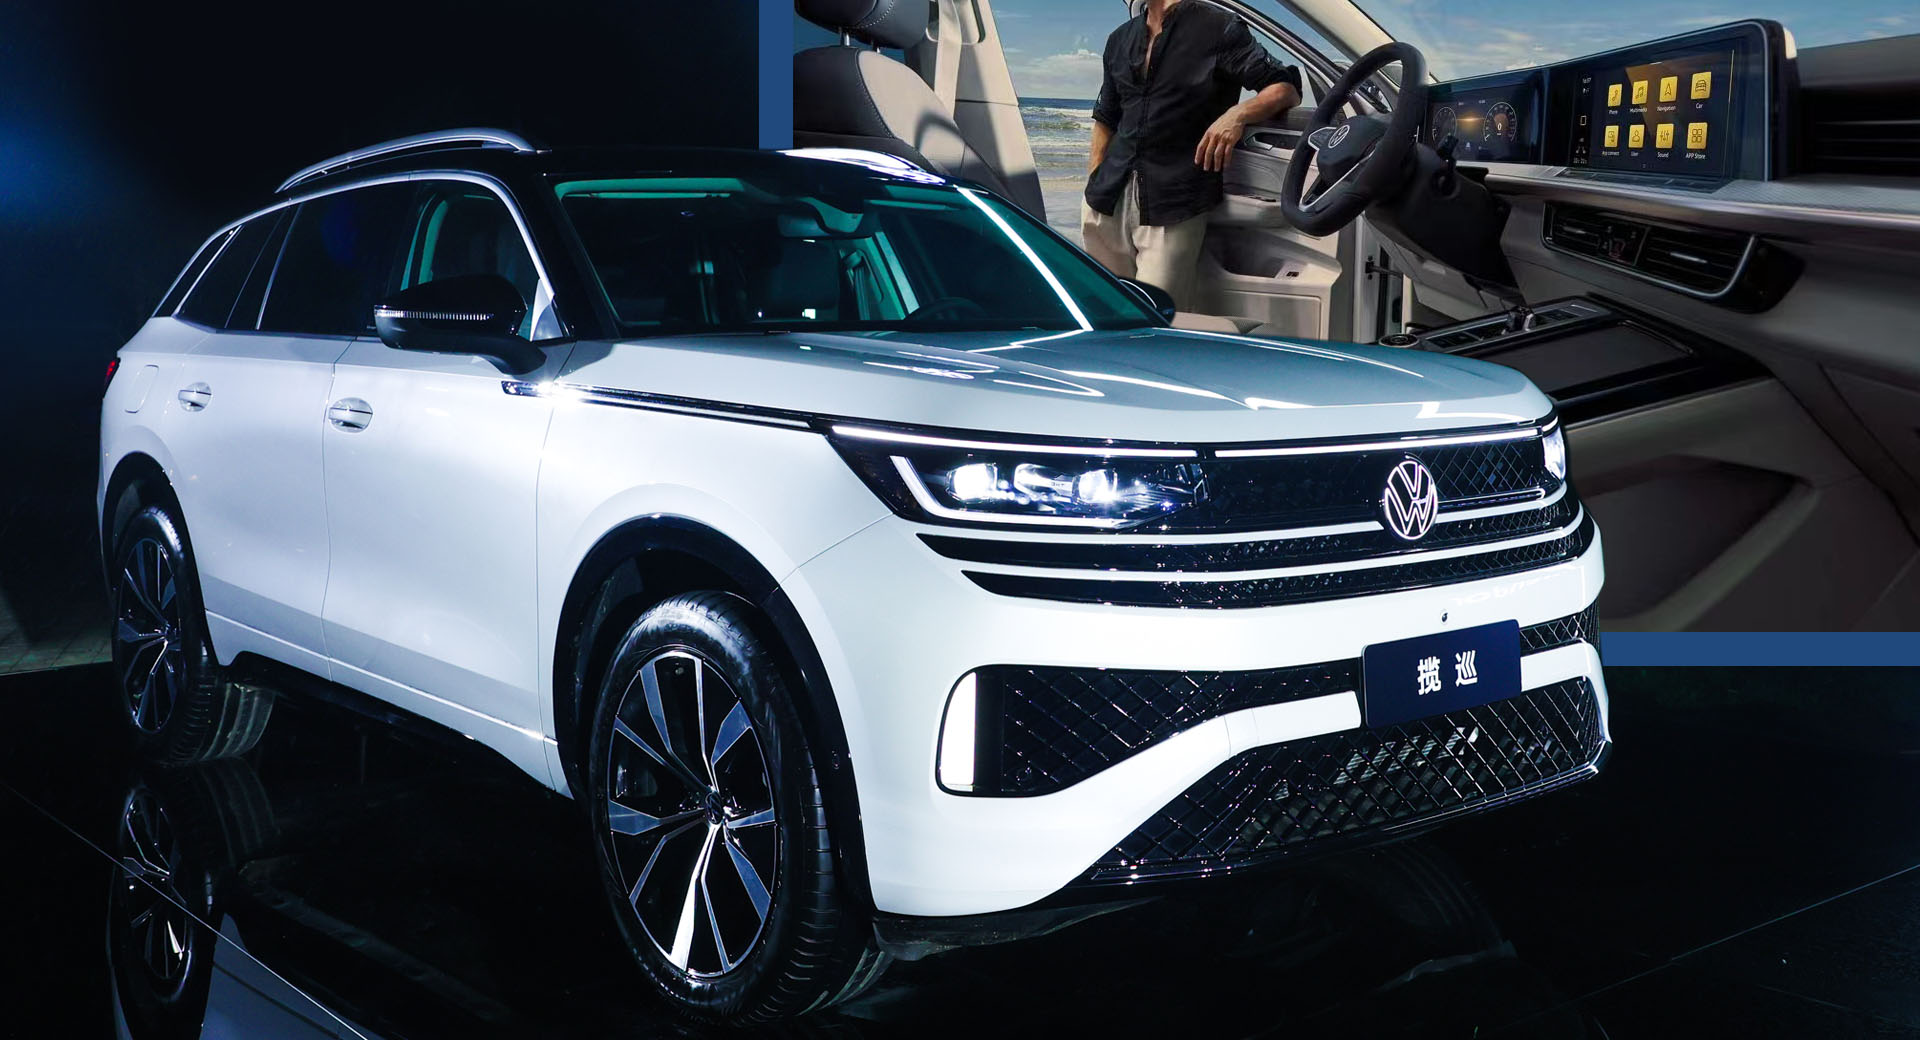 Le nouveau Tavendor de VW est encore un autre SUV basé sur MQB pour la Chine